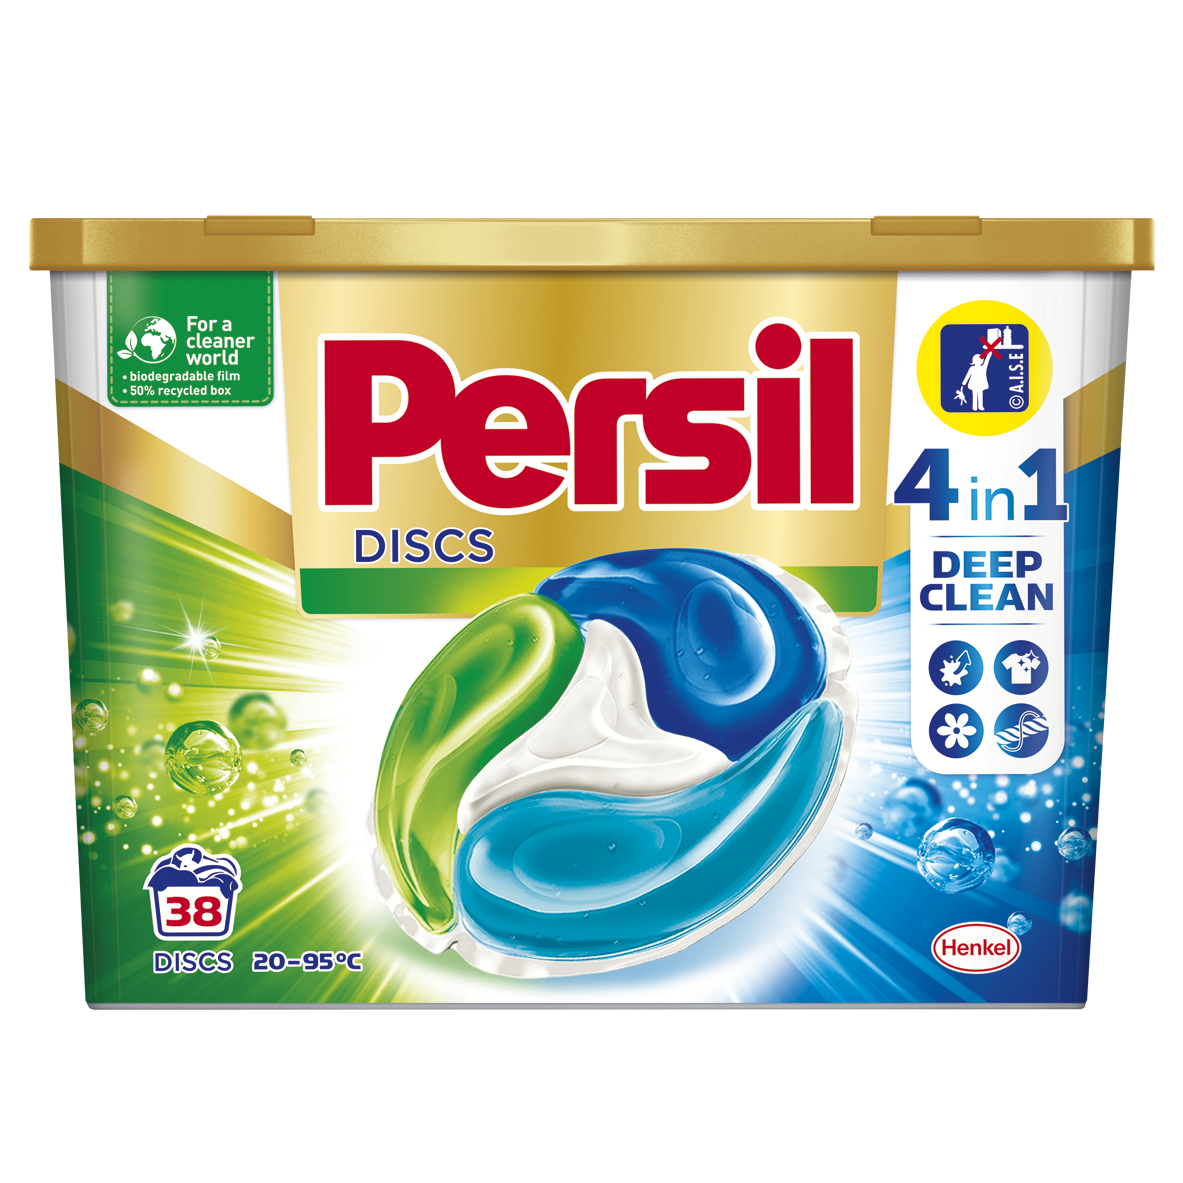 Гель для стирки в капсулах Persil Discs Universal Deep Clean, 38 шт. (825759) - фото 1